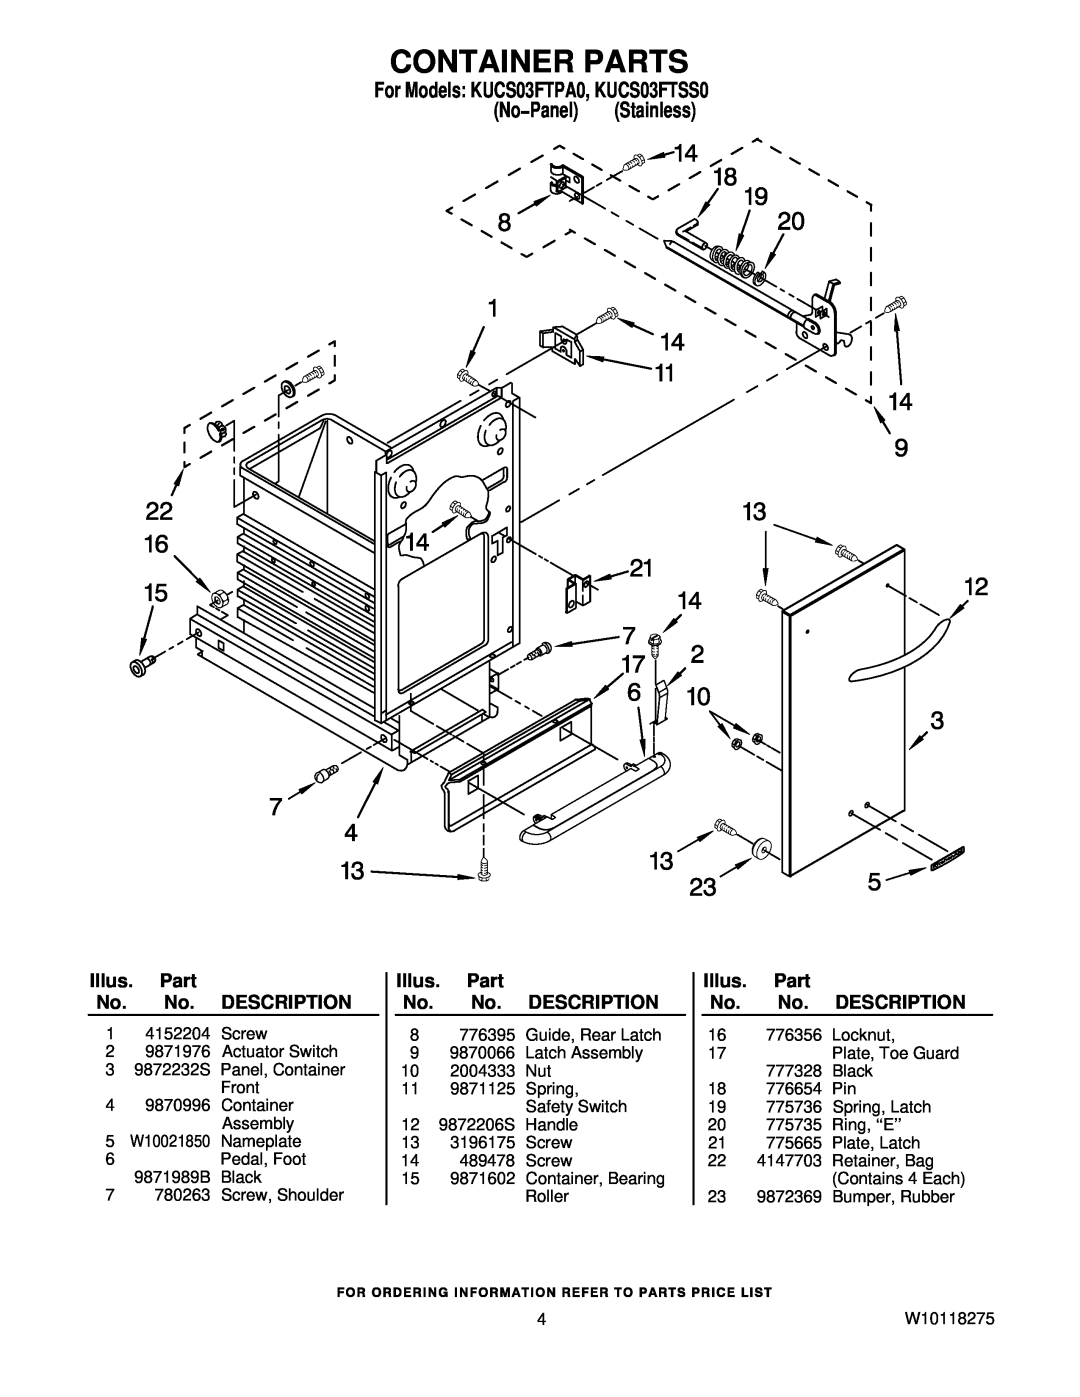 KitchenAid Container Parts, For Models: KUCS03FTPA0, KUCS03FTSS0, No−Panel Stainless, Illus. Part No. No. DESCRIPTION 